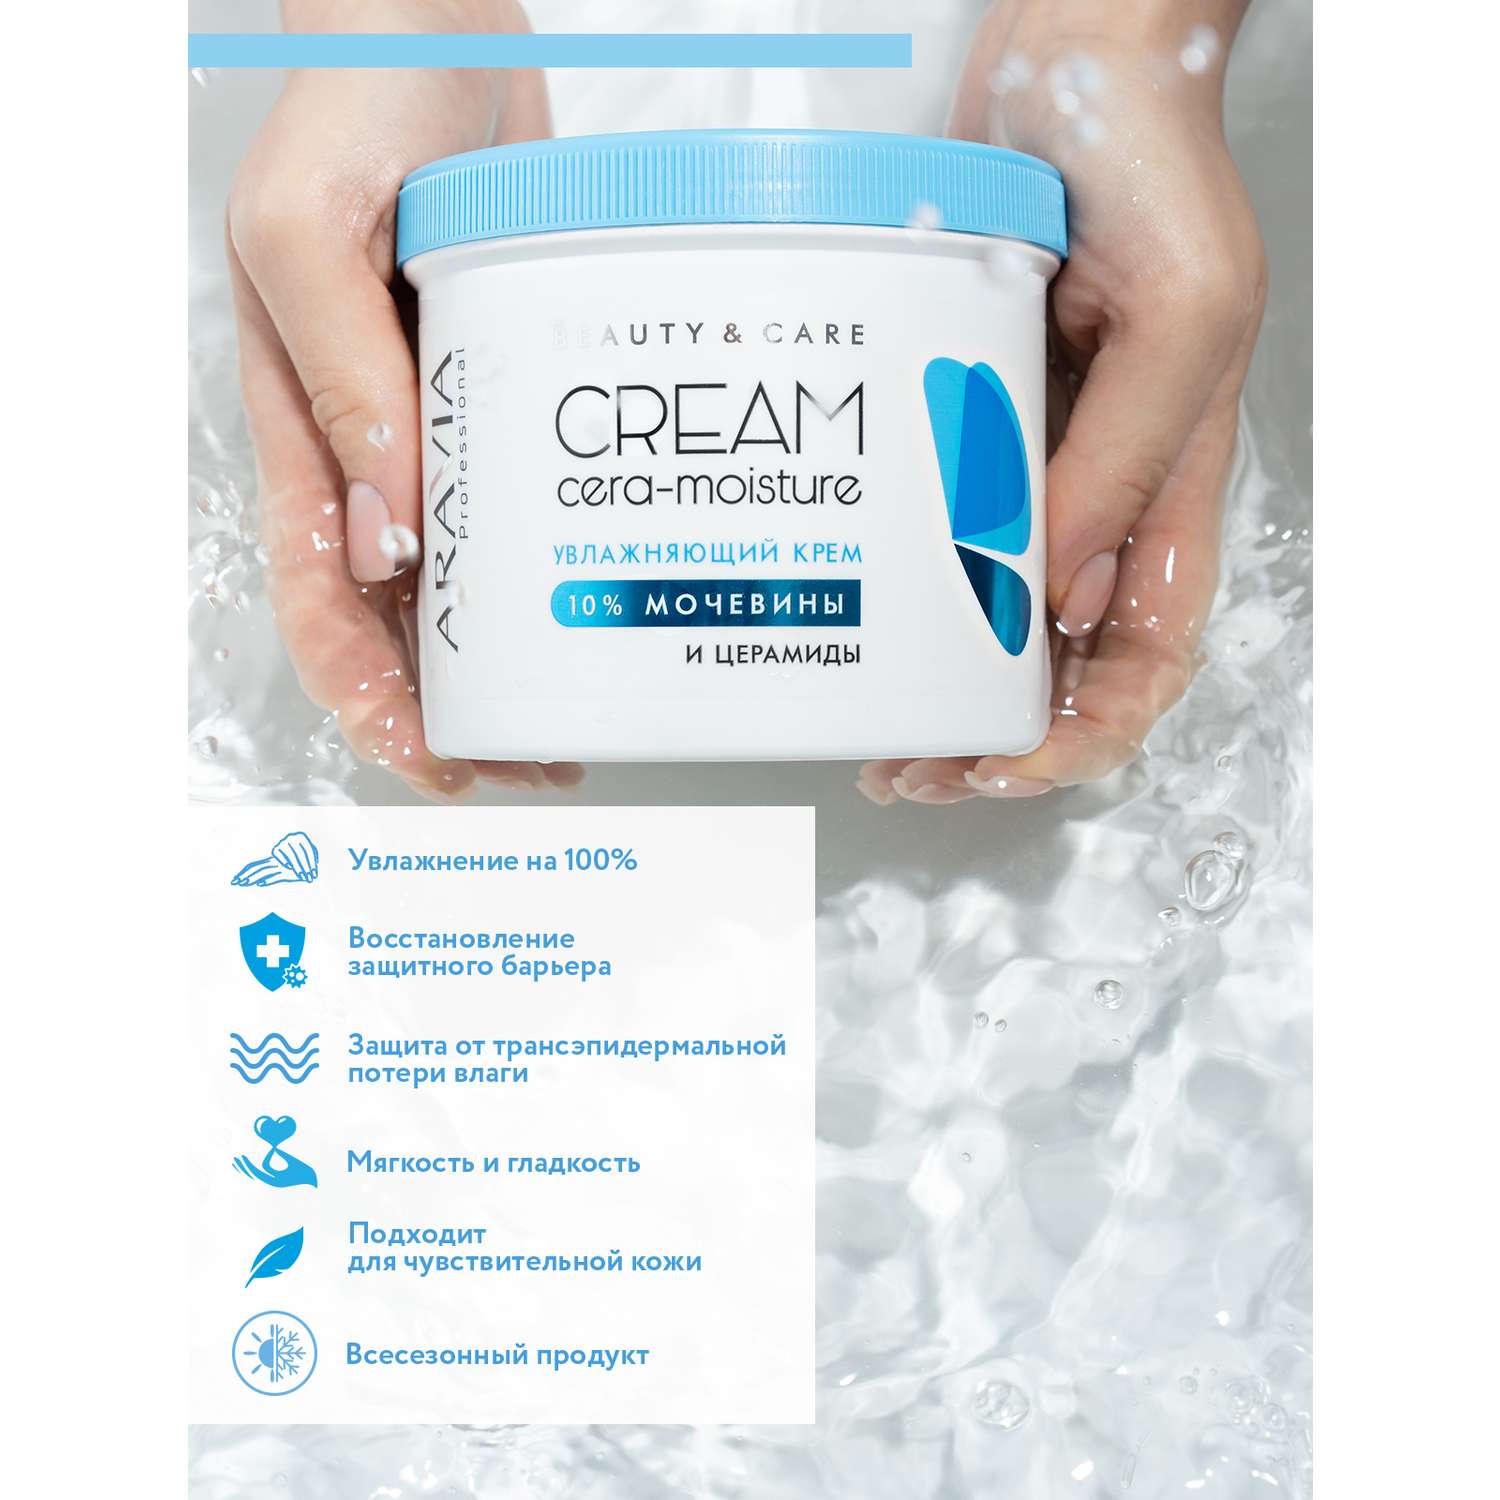 Крем для лица ARAVIA Professional увлажняющий с церамидами и мочевиной 10% Cera-moisture Cream - фото 6